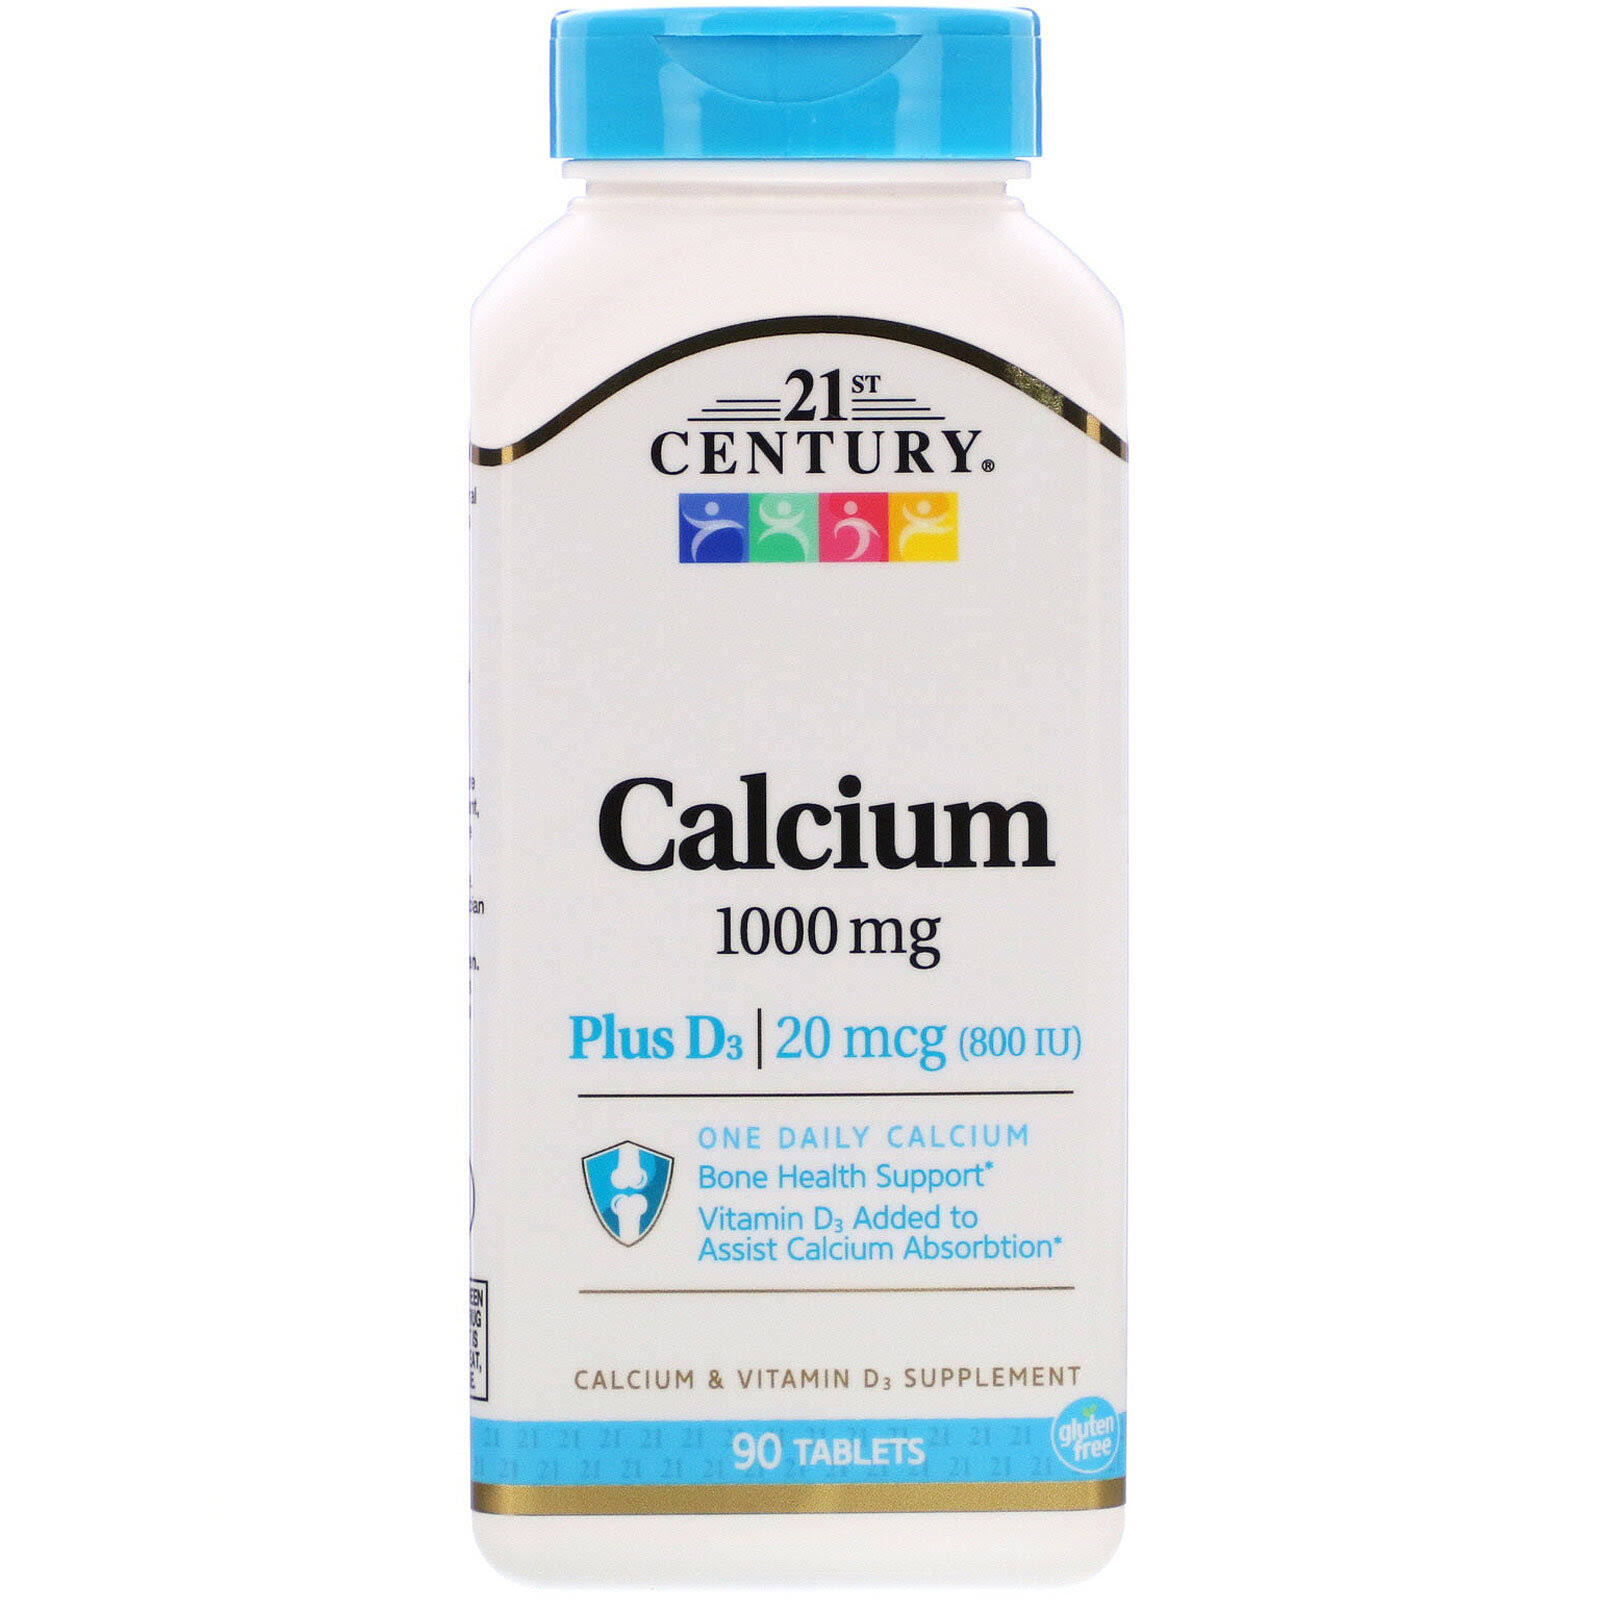 21st Century Calcium 1000 +D3 Calcium Supplement - 90 Tablets